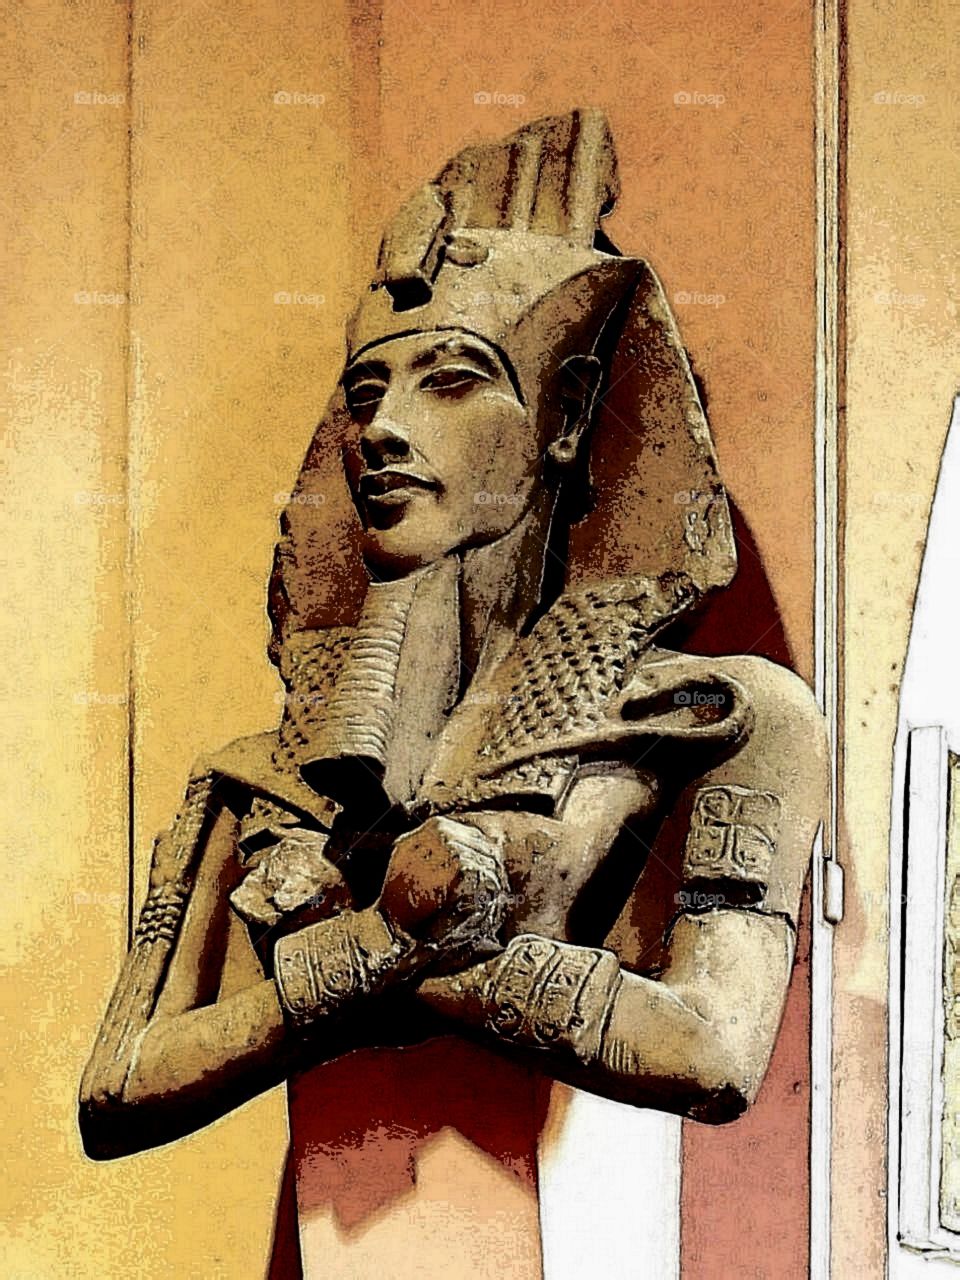 Echnaton, ägyptisches Museum Kairo, altägyptischer König, Pharao, würdevoll, eindrucksvoll, ausdrucksstark